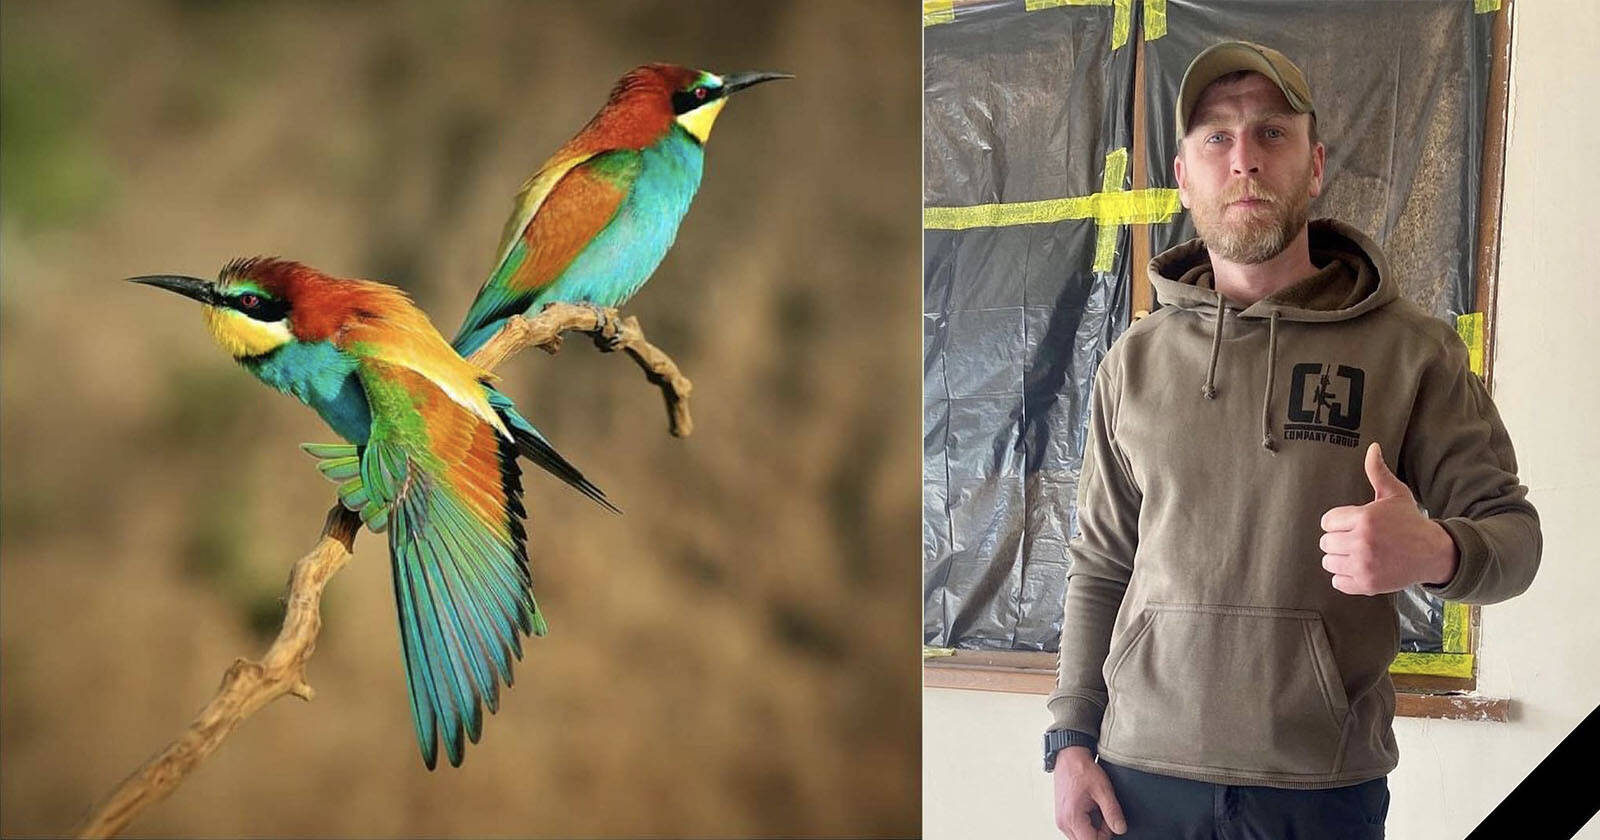  wildlife photographer published nat geo killed ukraine 